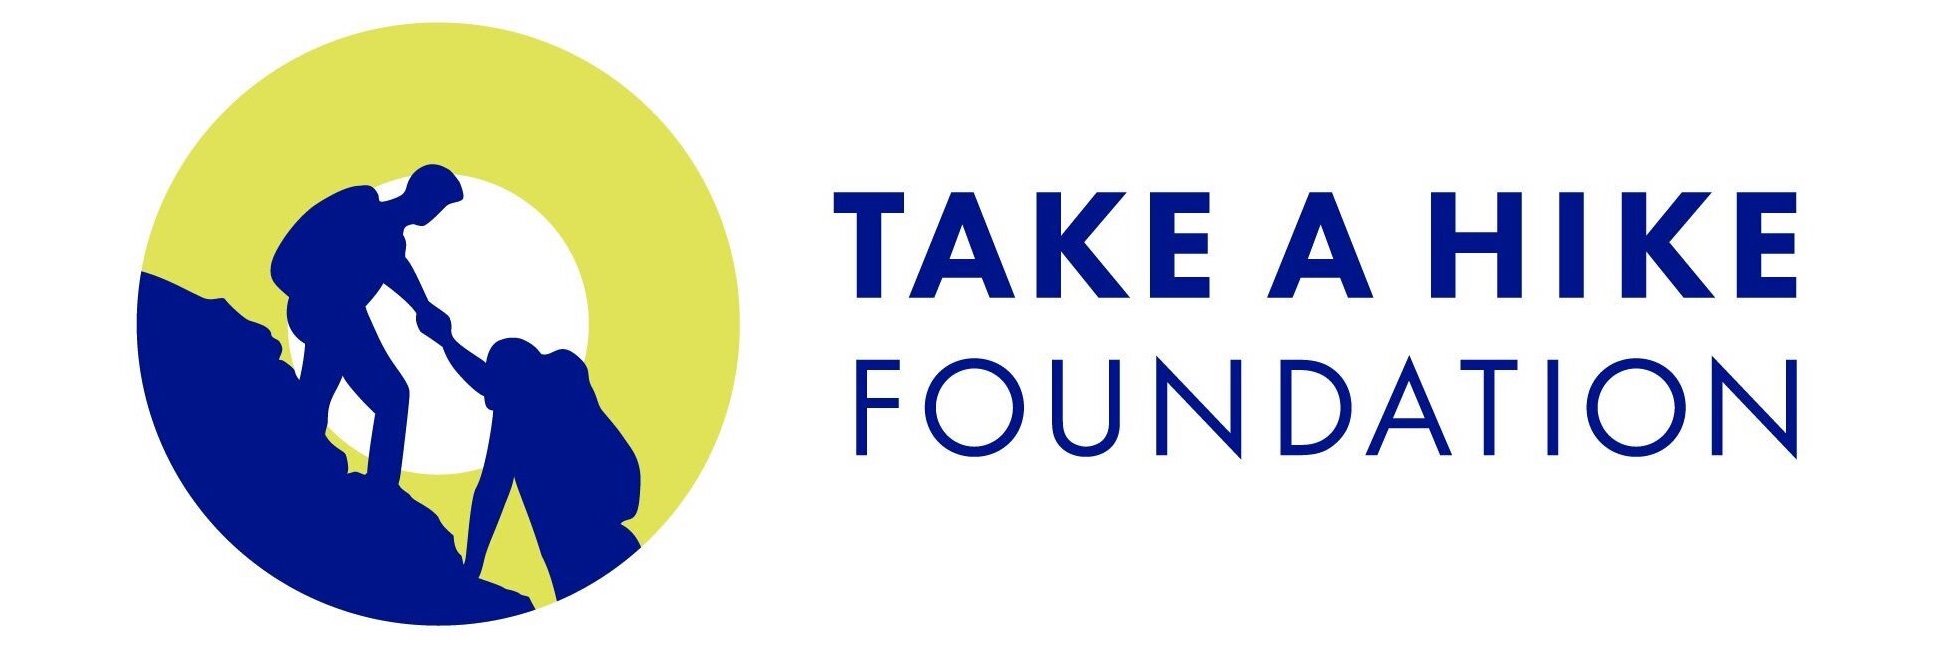 Take A Hike Foundation logo